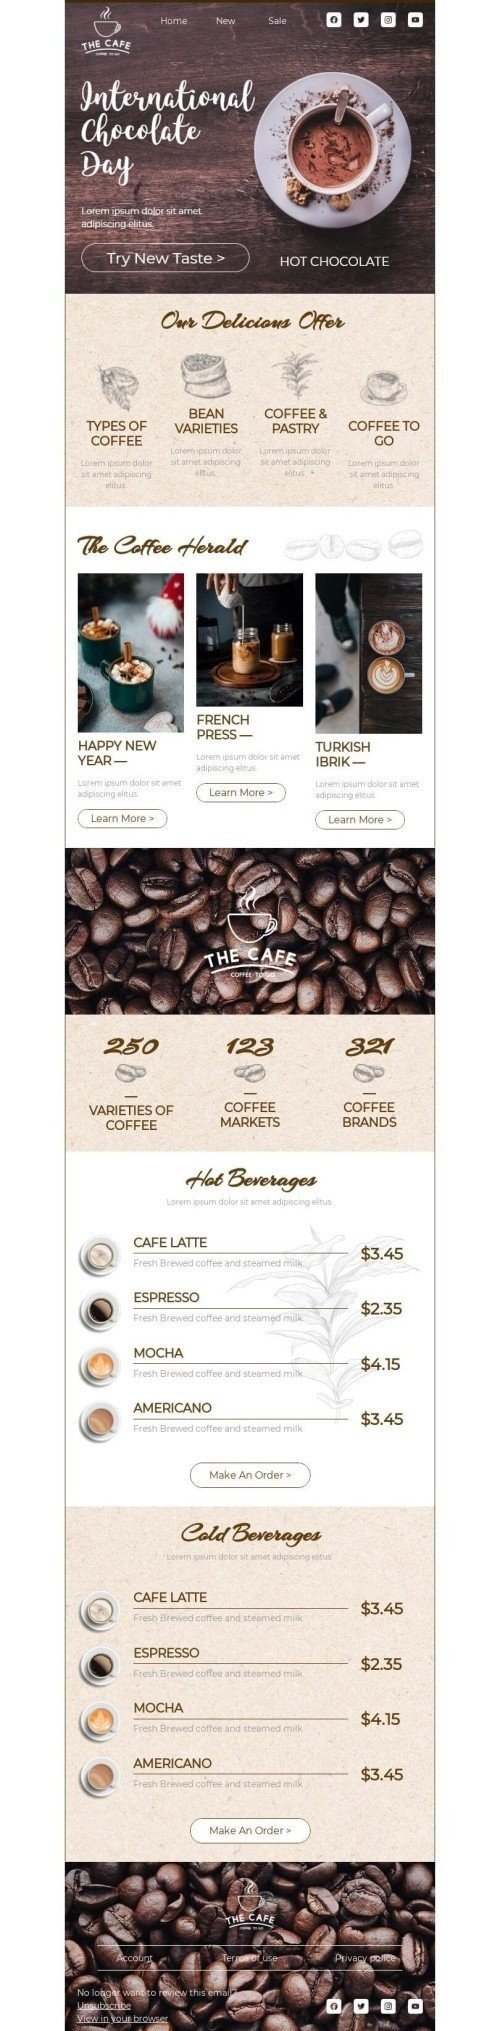 Der internationale Tag der Schokolade E-Mail-Vorlage «Probieren Sie einen neuen Geschmack» für Getränke-Branche desktop view